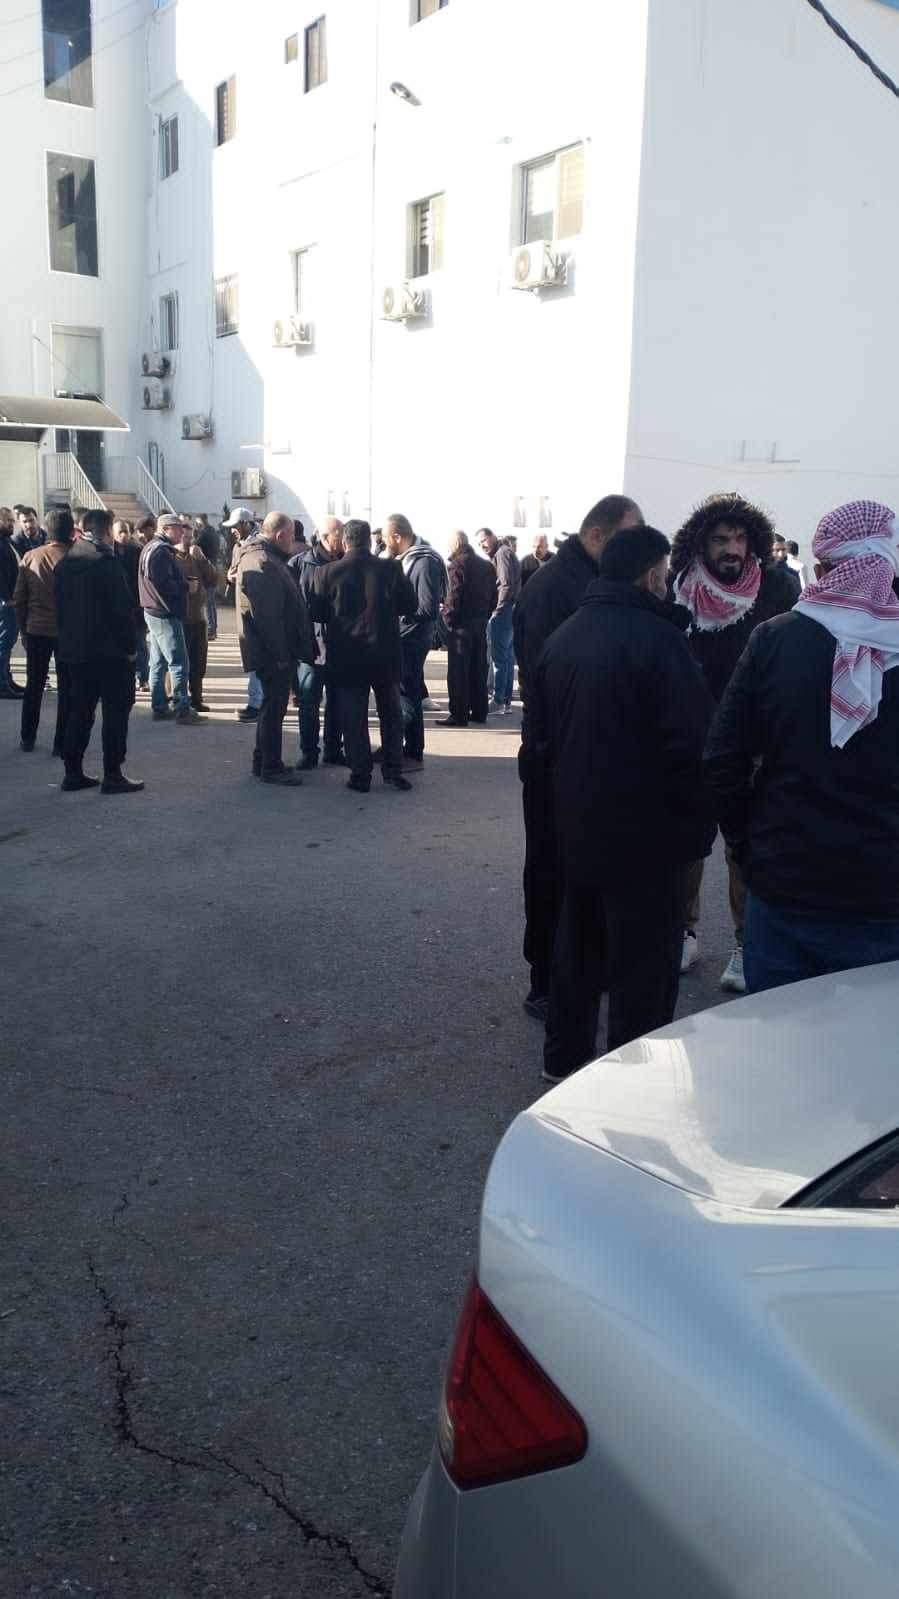 تواصل الاضراب المفتوح عن العمل في مياه اليرموك للمطالبة باقالة هيئة المديرين